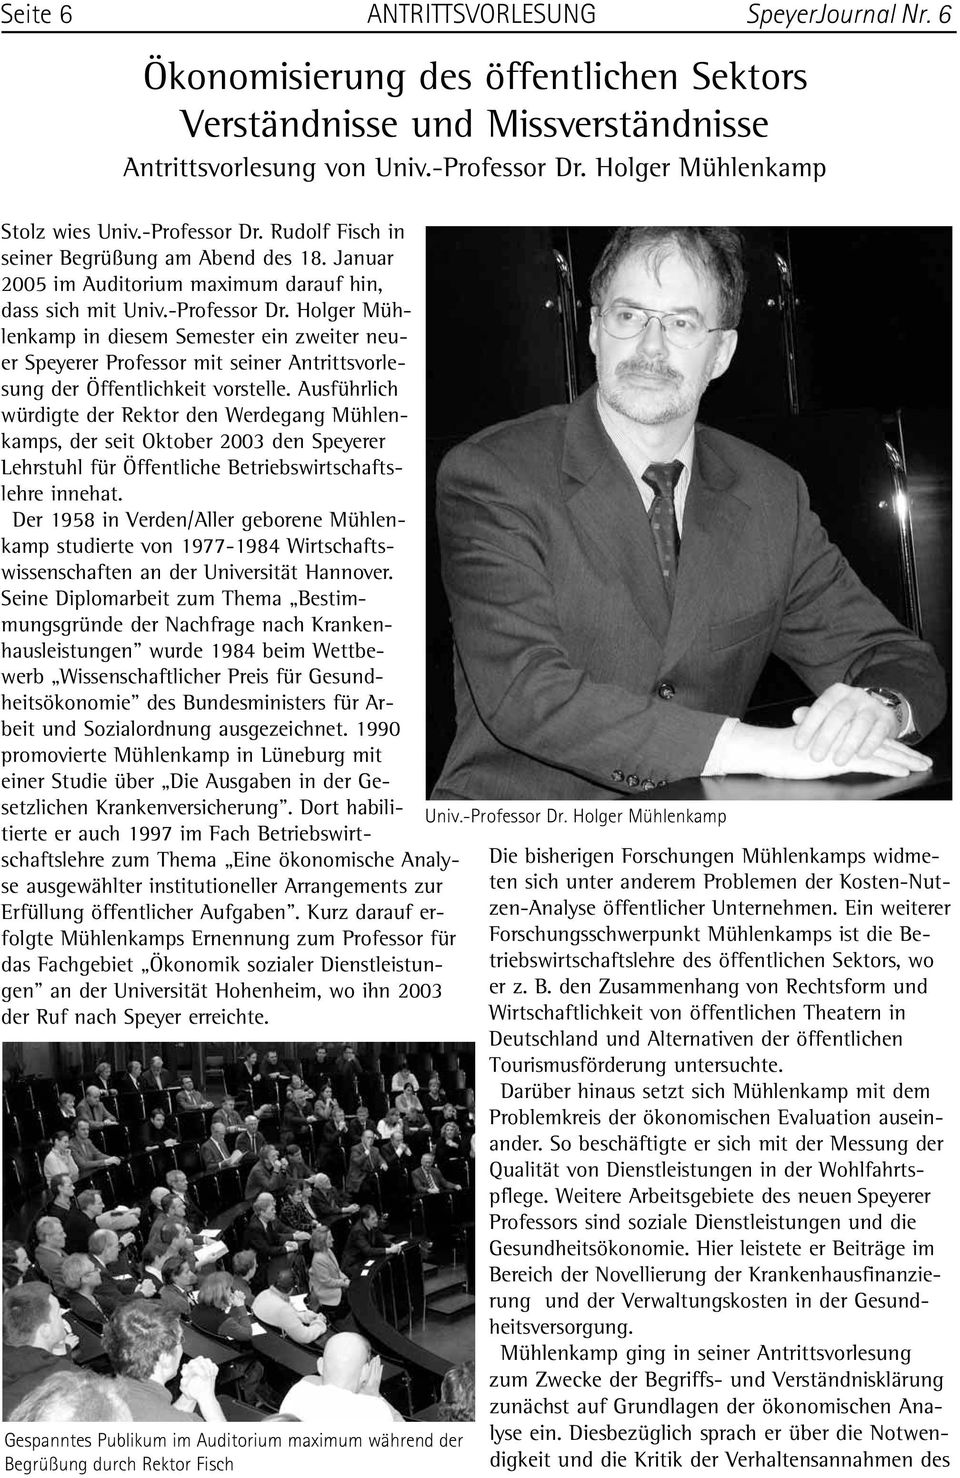 Ausführlich würdigte der Rektor den Werdegang Mühlenkamps, der seit Oktober 2003 den Speyerer Lehrstuhl für Öffentliche Betriebswirtschaftslehre innehat.